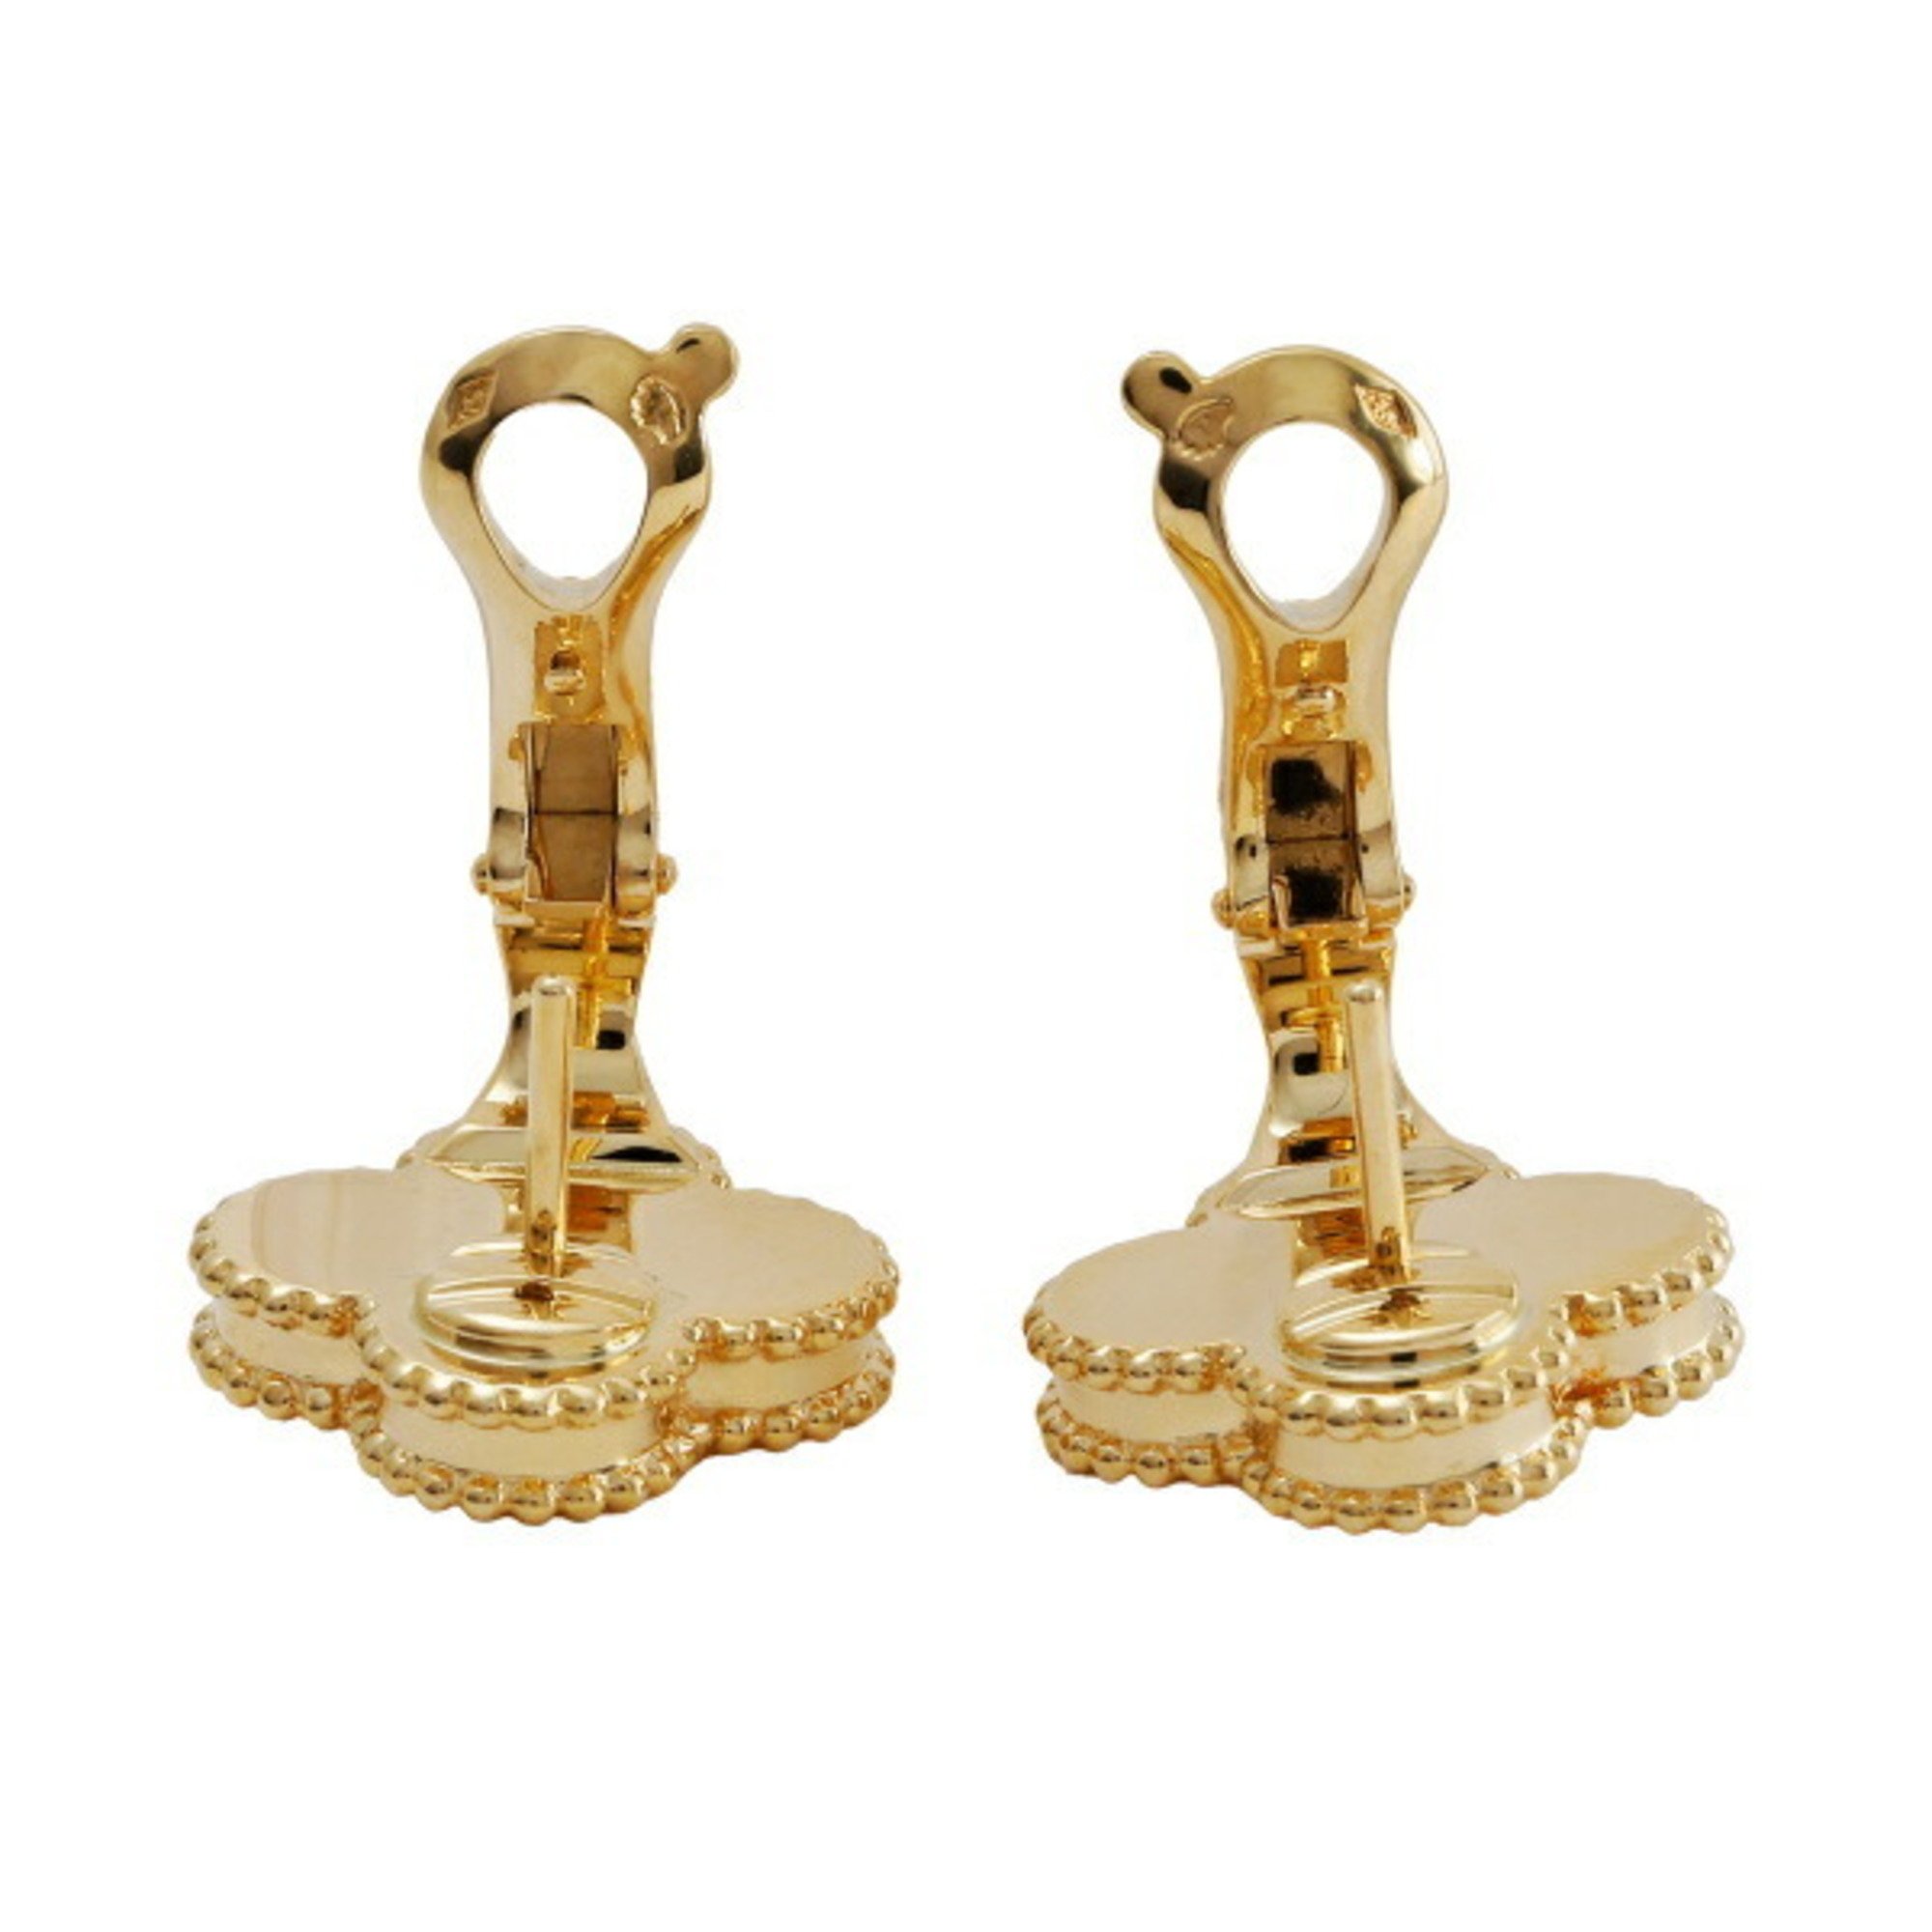 Van Cleef & Arpels Alhambra 18K Yellow Gold Earrings